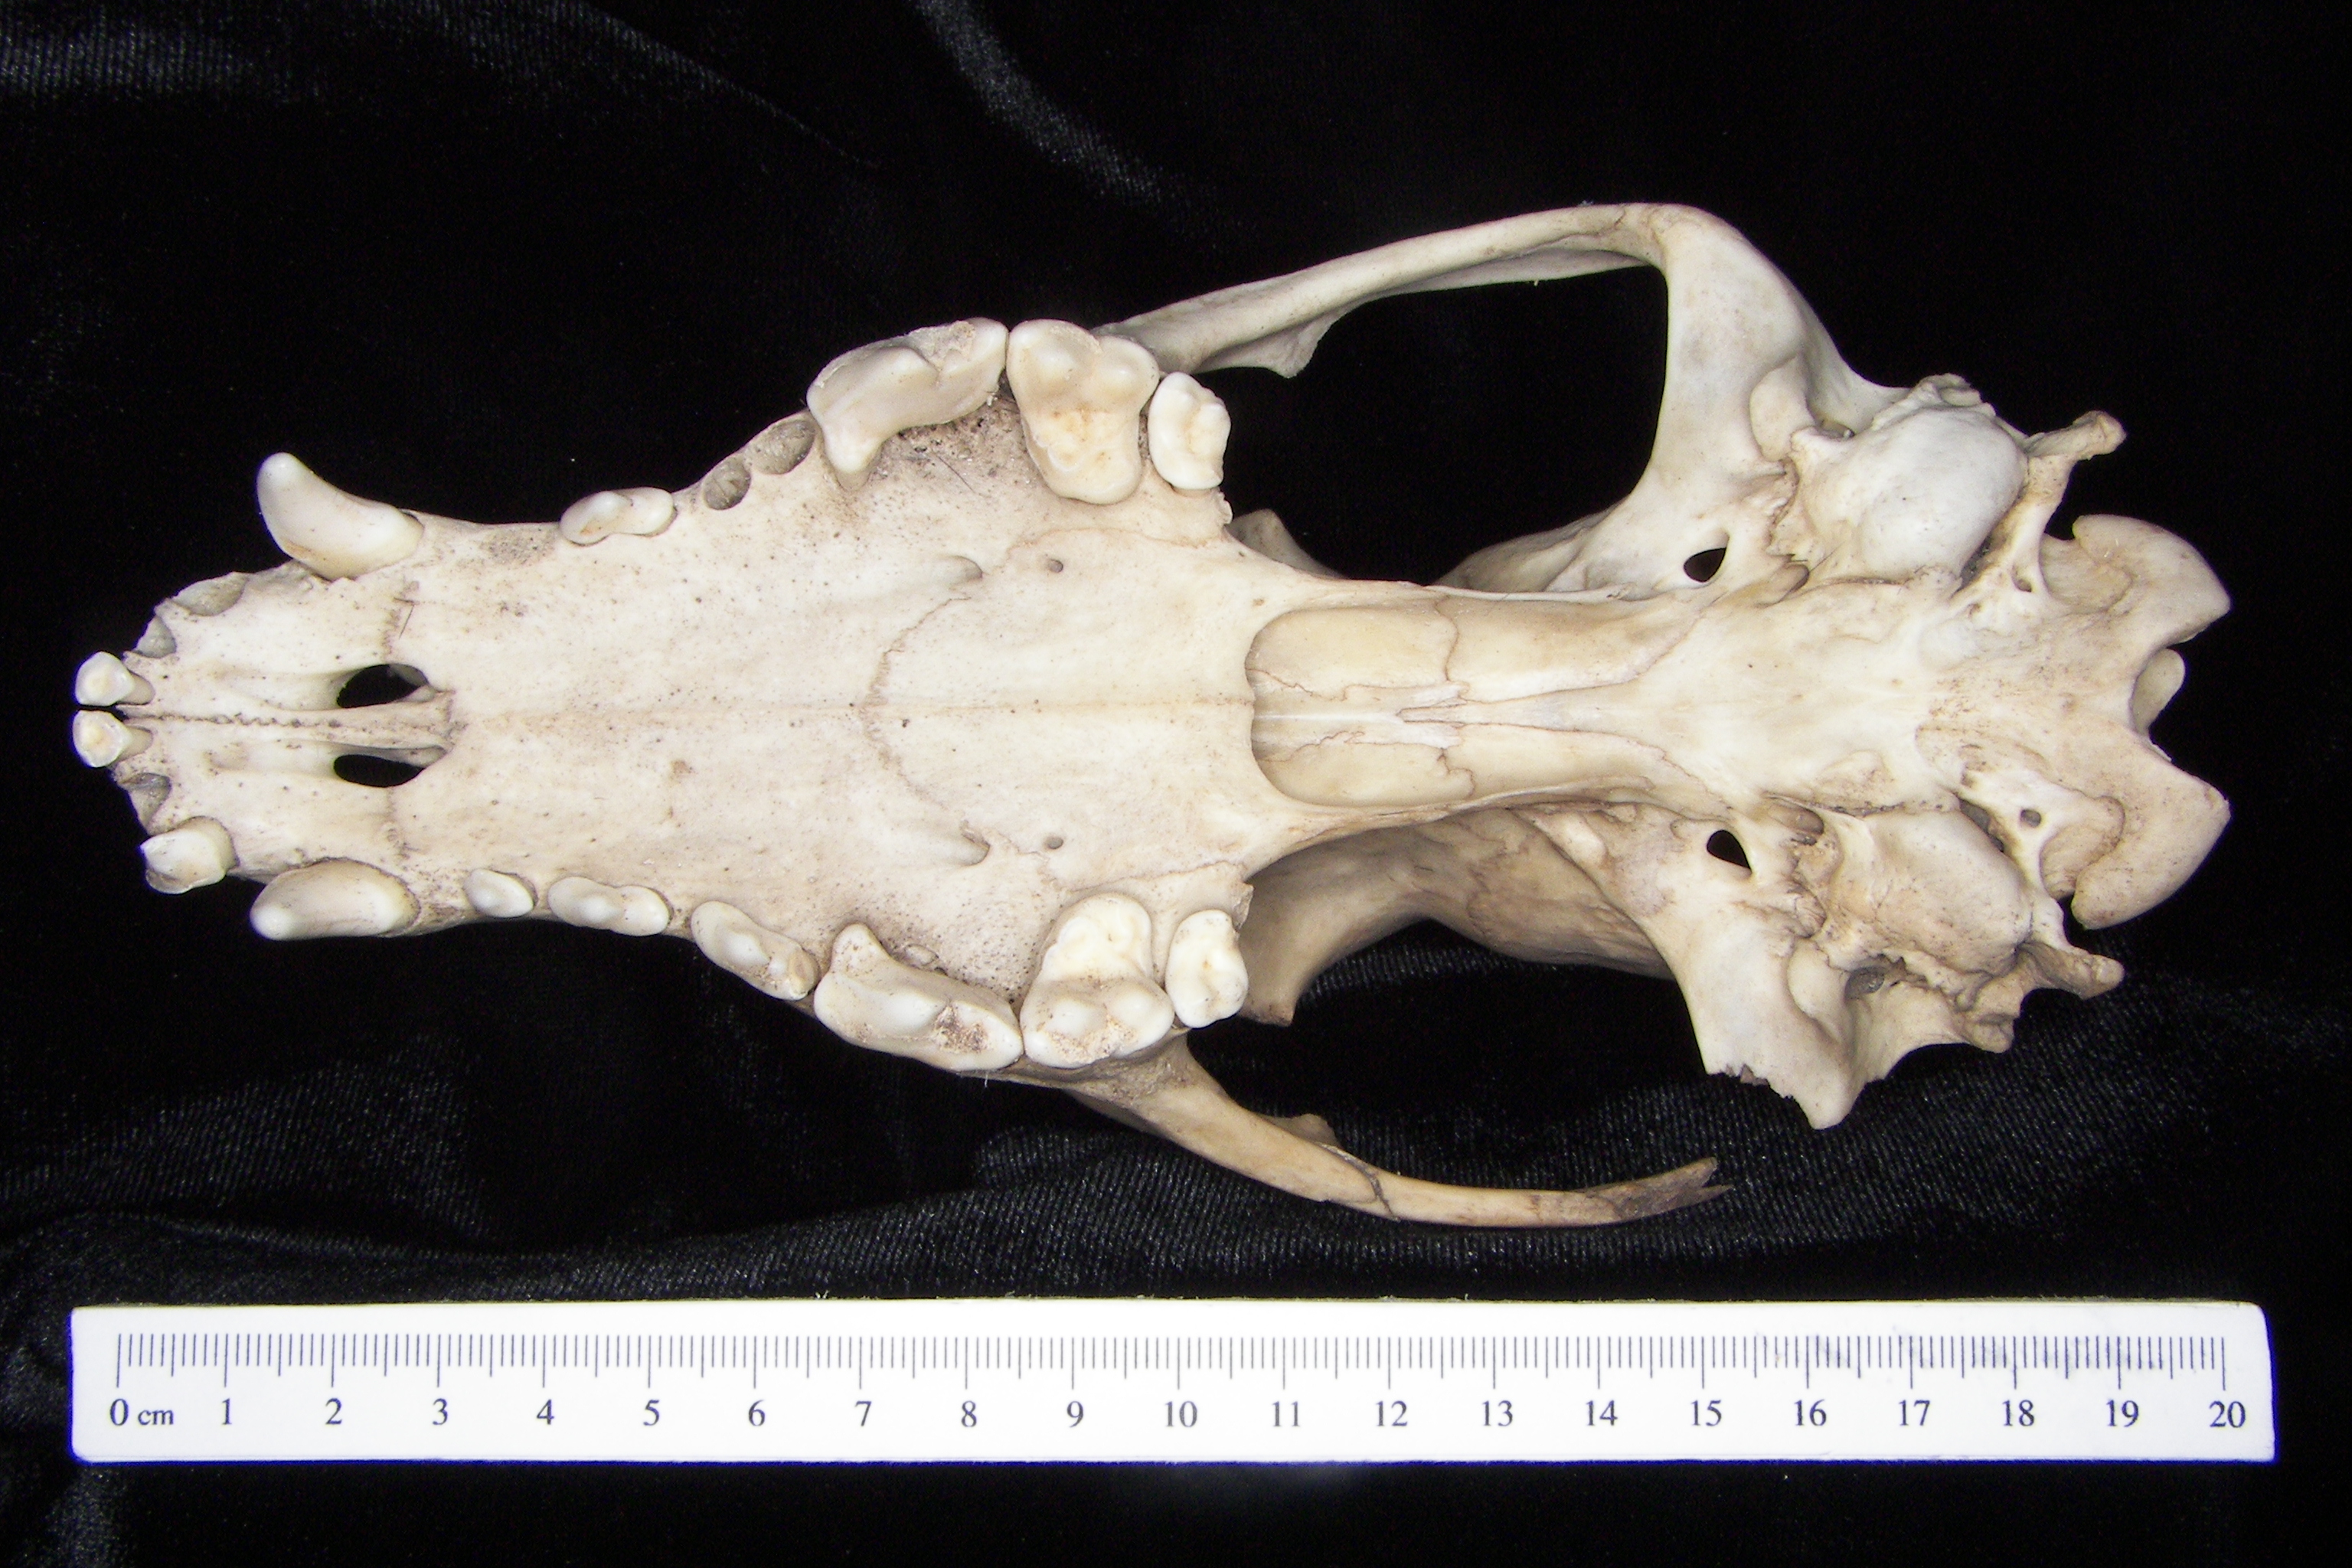 Dog (Canis lupus familiaris) cranium, inferior view